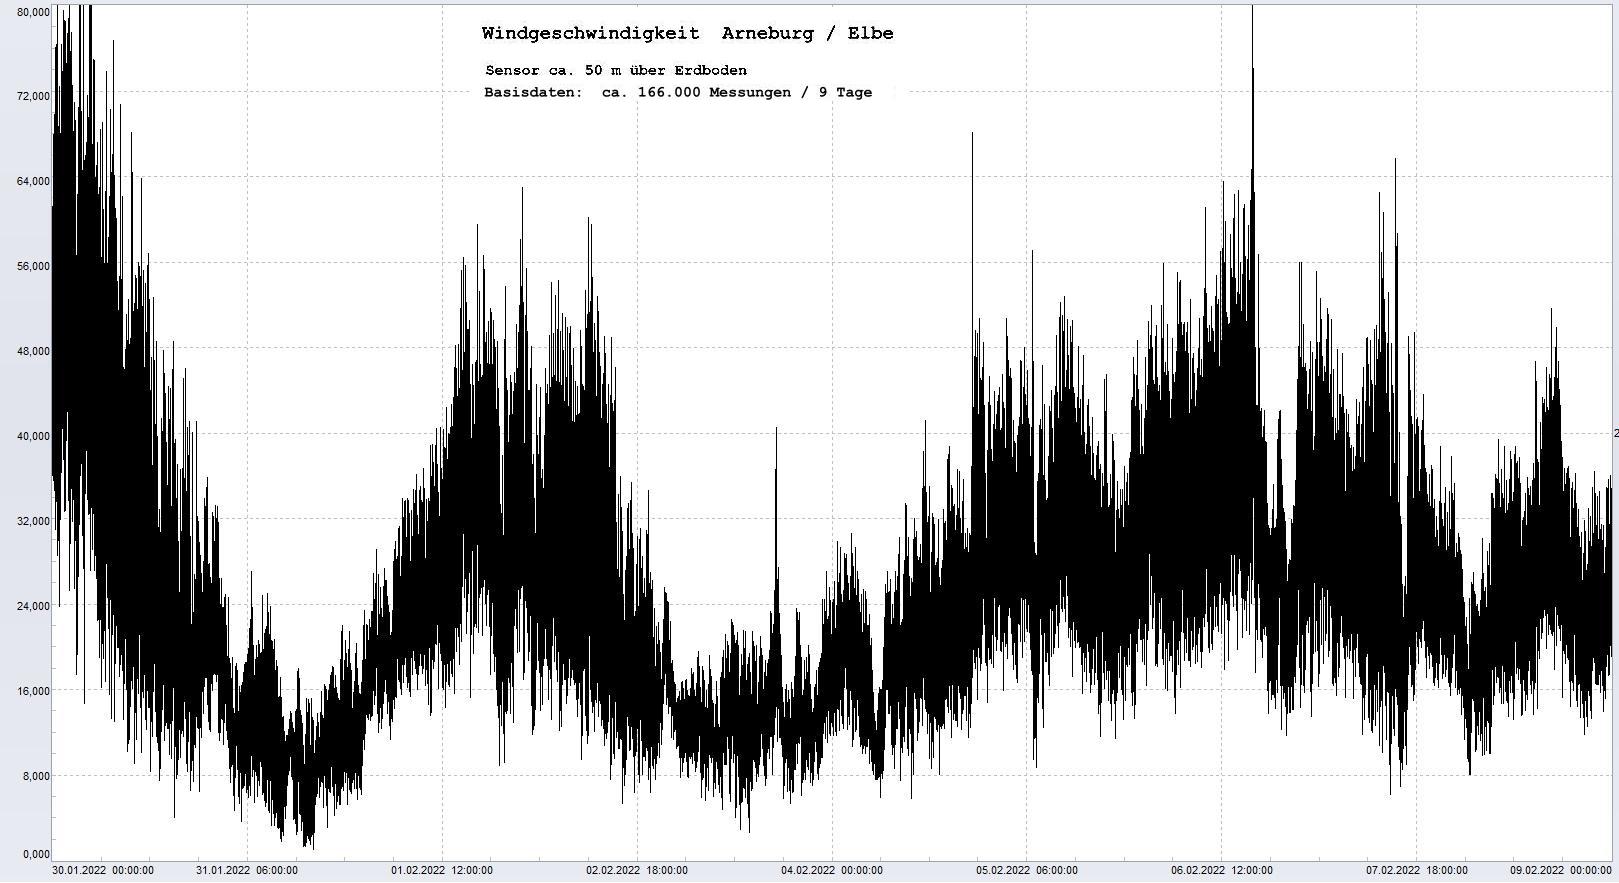 Arneburg 9 Tage Histogramm Winddaten, 
  Sensor auf Gebäude, ca. 50 m über Erdboden, Basis: 5s-Aufzeichnung